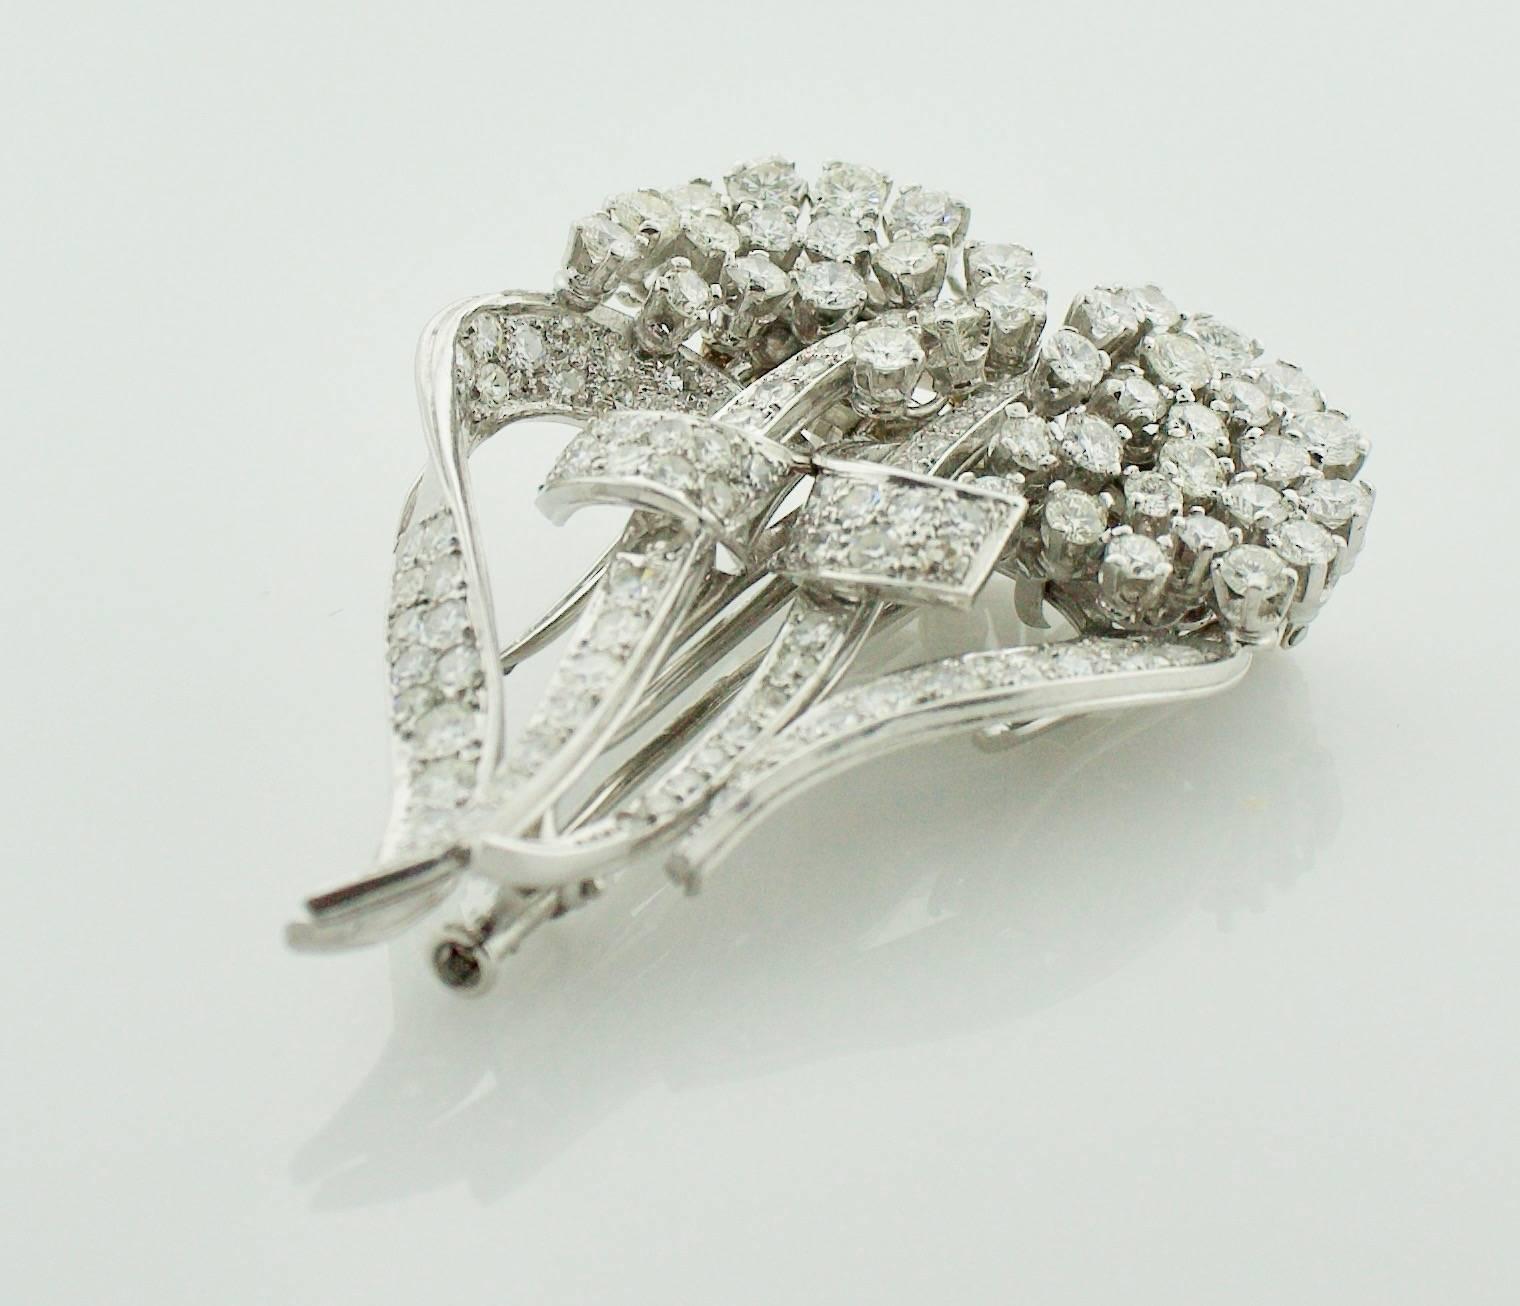 Clips de broches à diamants des années 1940

Cette superbe broche clip en diamant des années 1940 est une pièce unique et polyvalente. Il est serti de 106 diamants ronds, pesant environ 6,30 carats. Les diamants sont de belle qualité, avec un grade